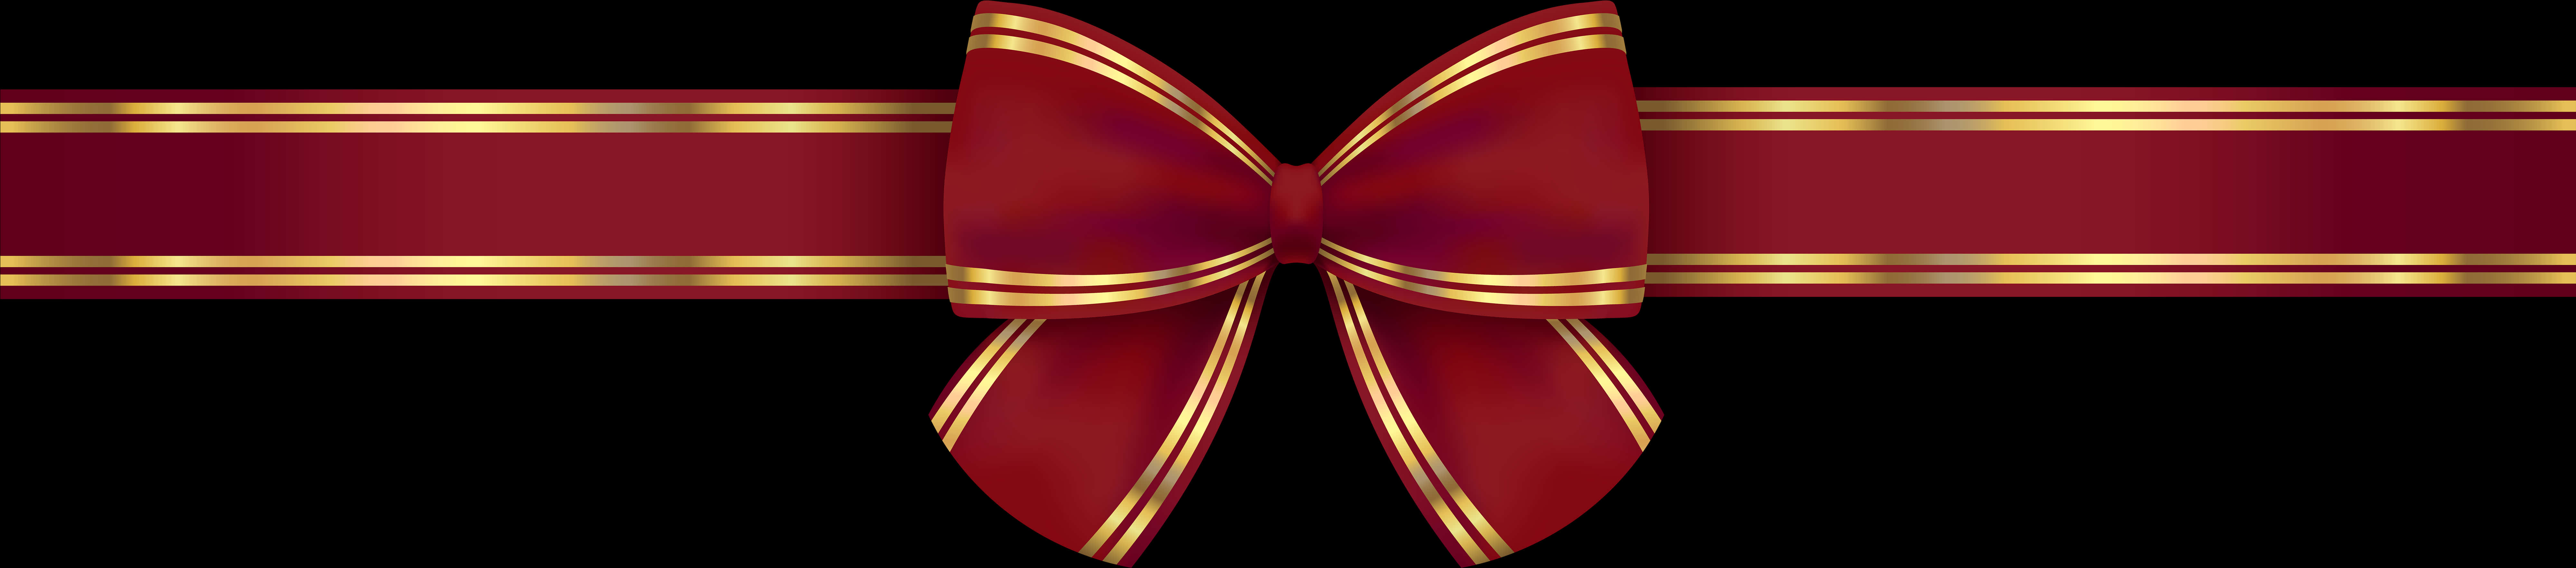 Elegant Red Gold Bow Design PNG image